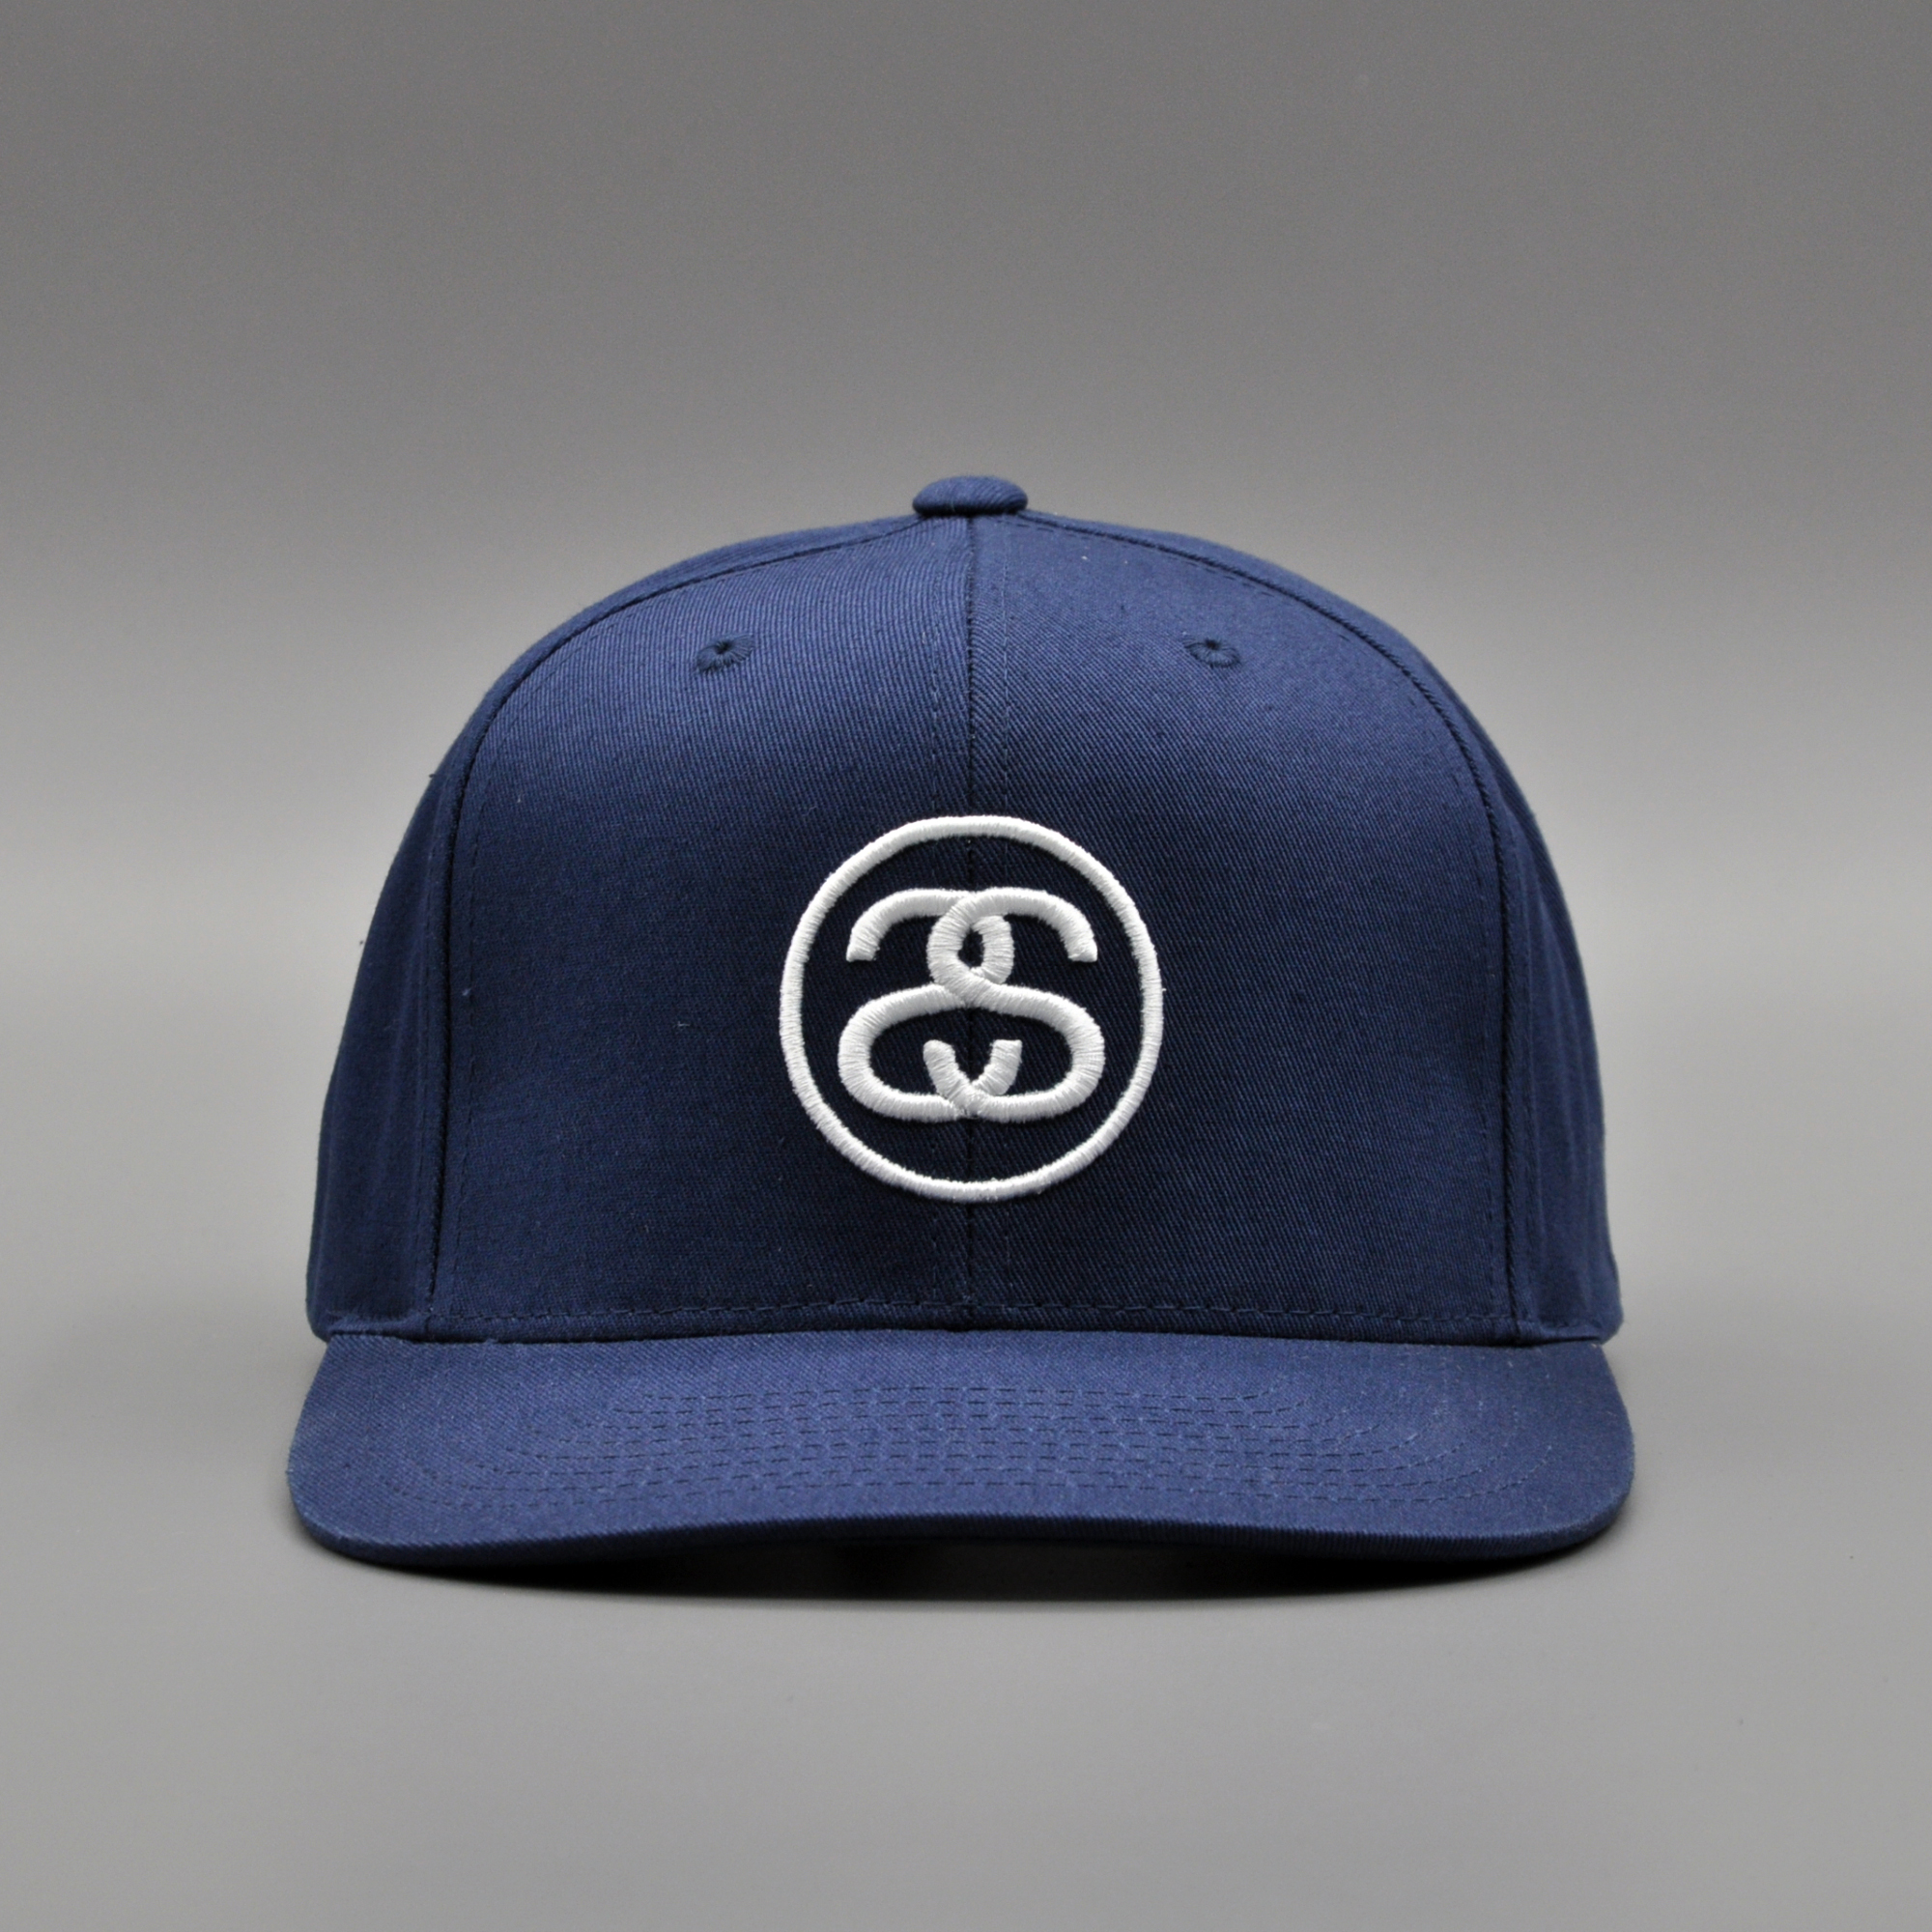 stusy ss logo 经典款 基本款 平沿帽 正品 潮牌 棒球帽